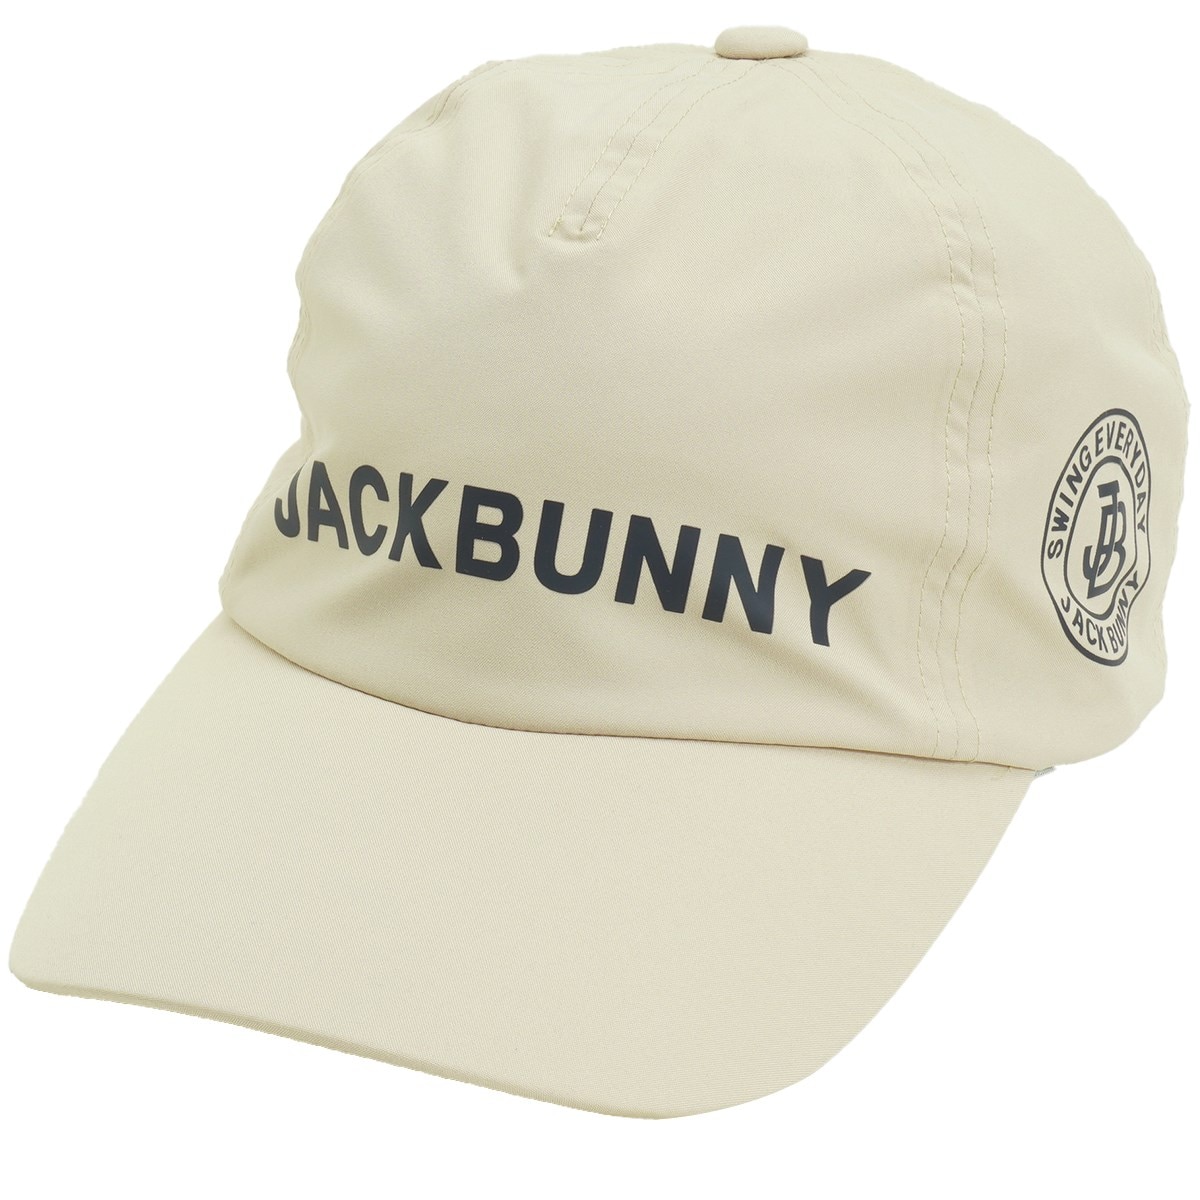 レインキャップ(レインウェア)|Jack Bunny!!(ジャックバニー 